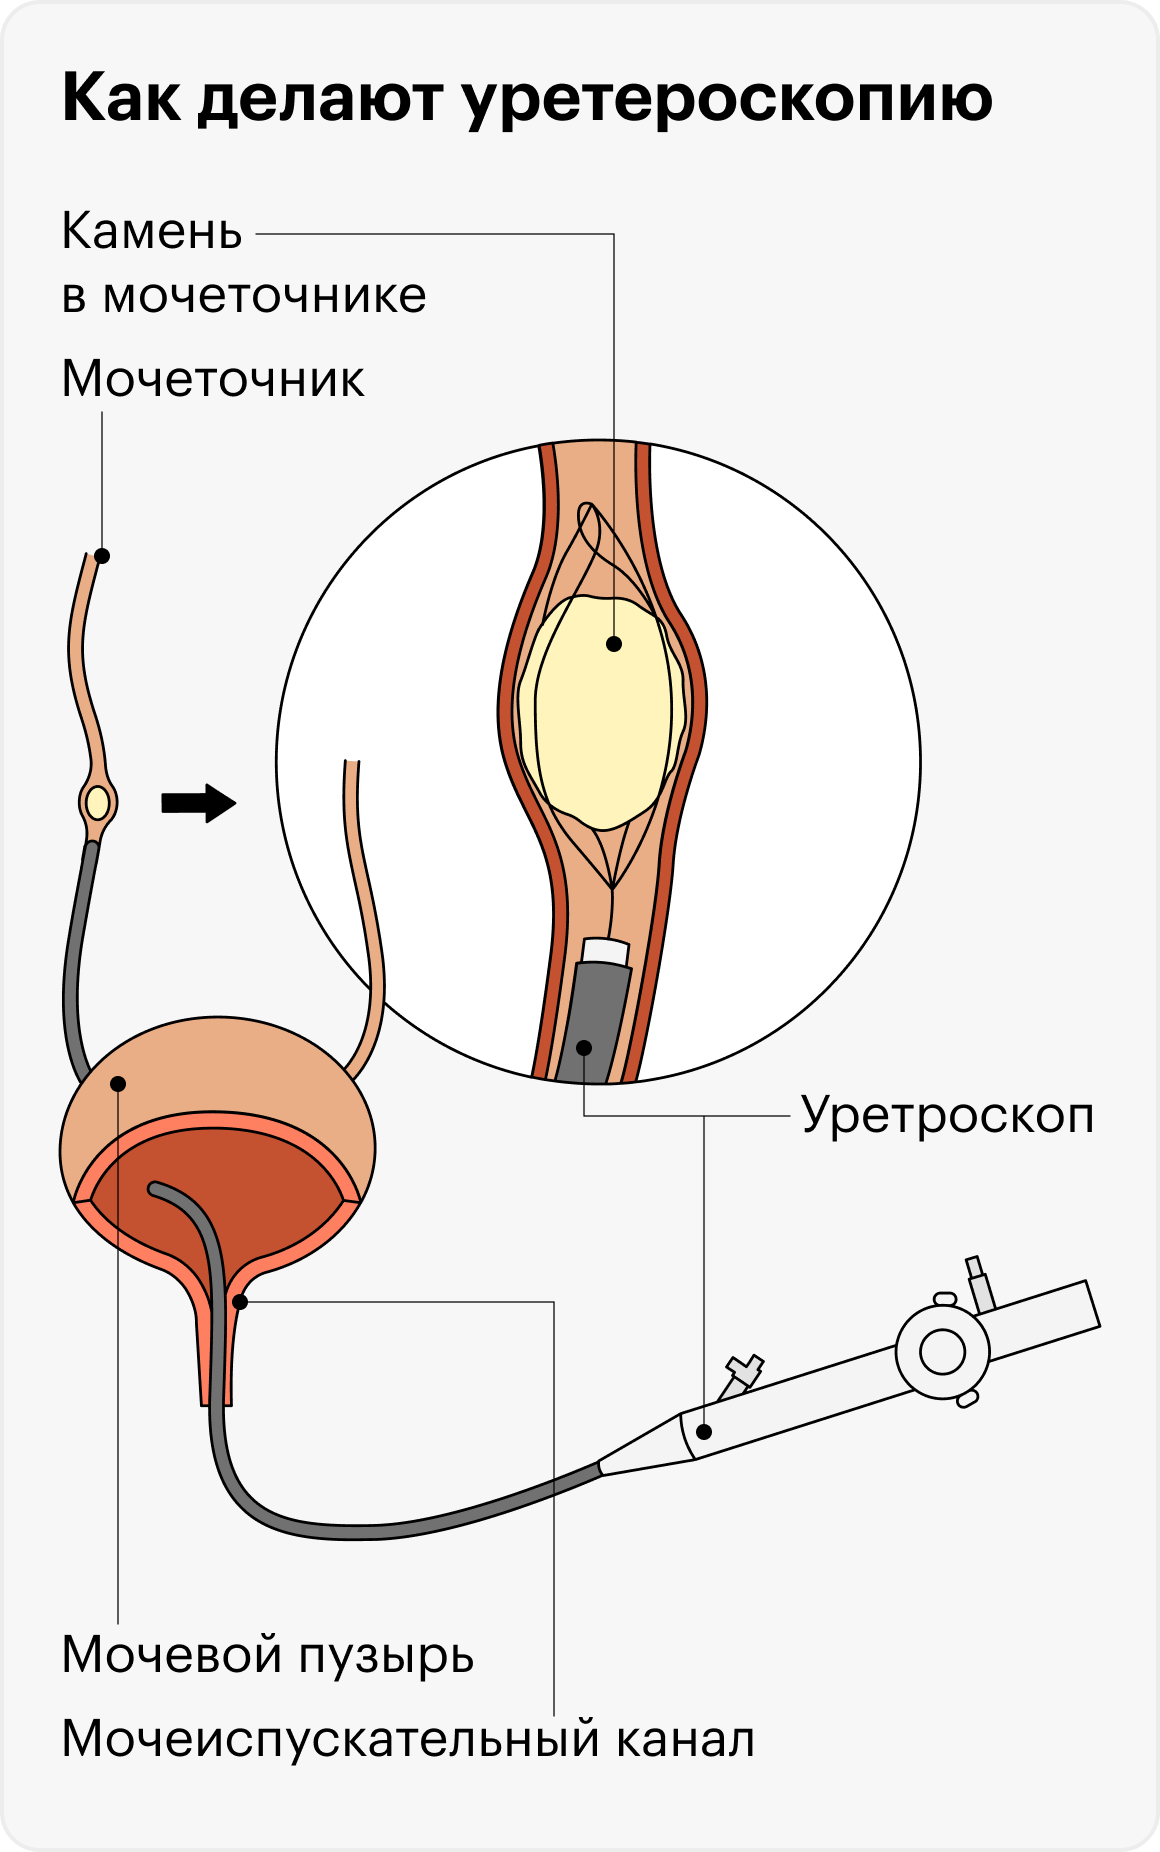 При&nbsp;уретероскопии камень удаляют или разрушают с помощью эндоскопического прибора, который вводят через мочеиспускательный канал